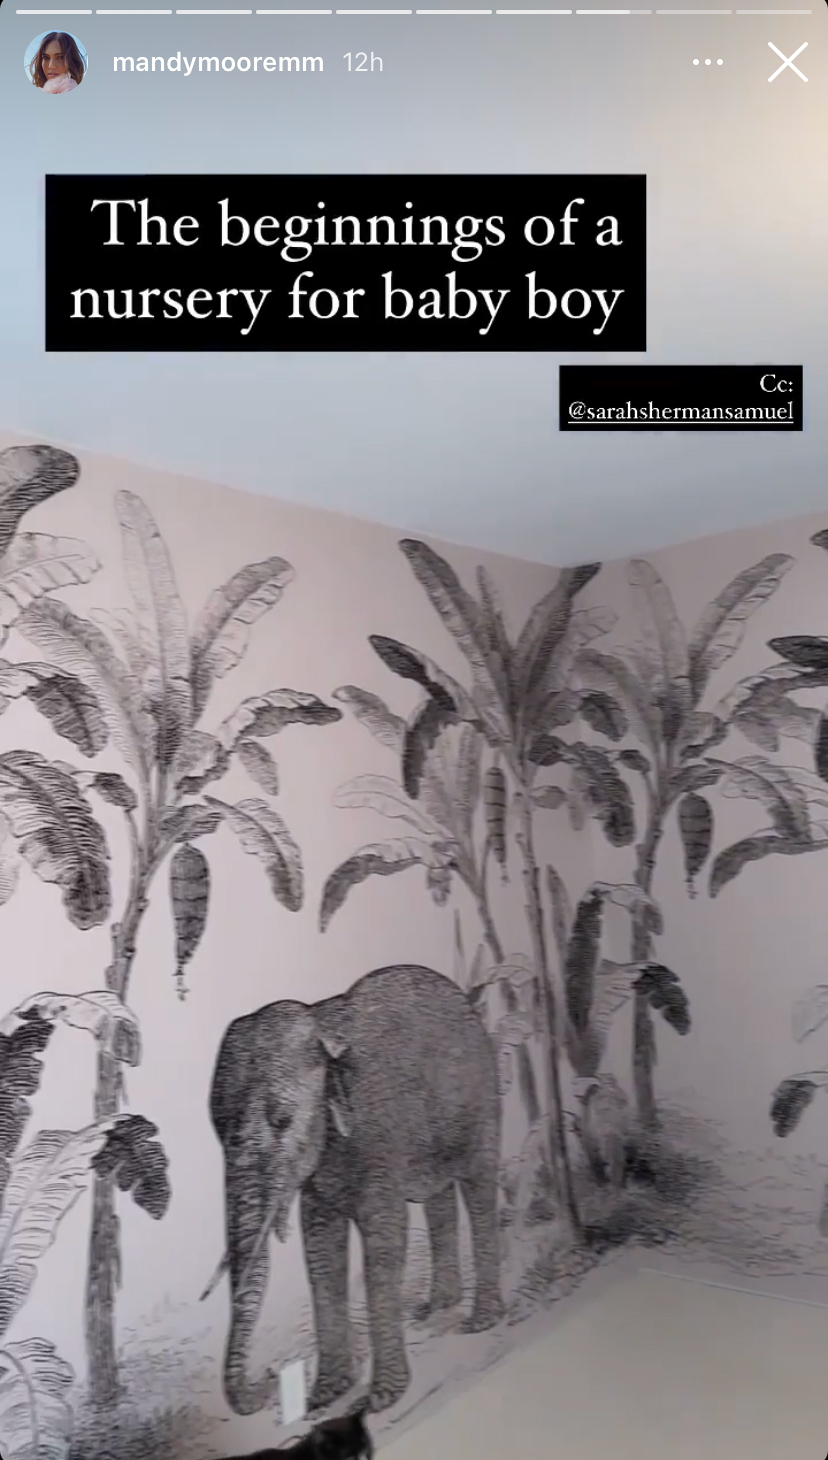 Screen shot of elephant wallpaper in nursery